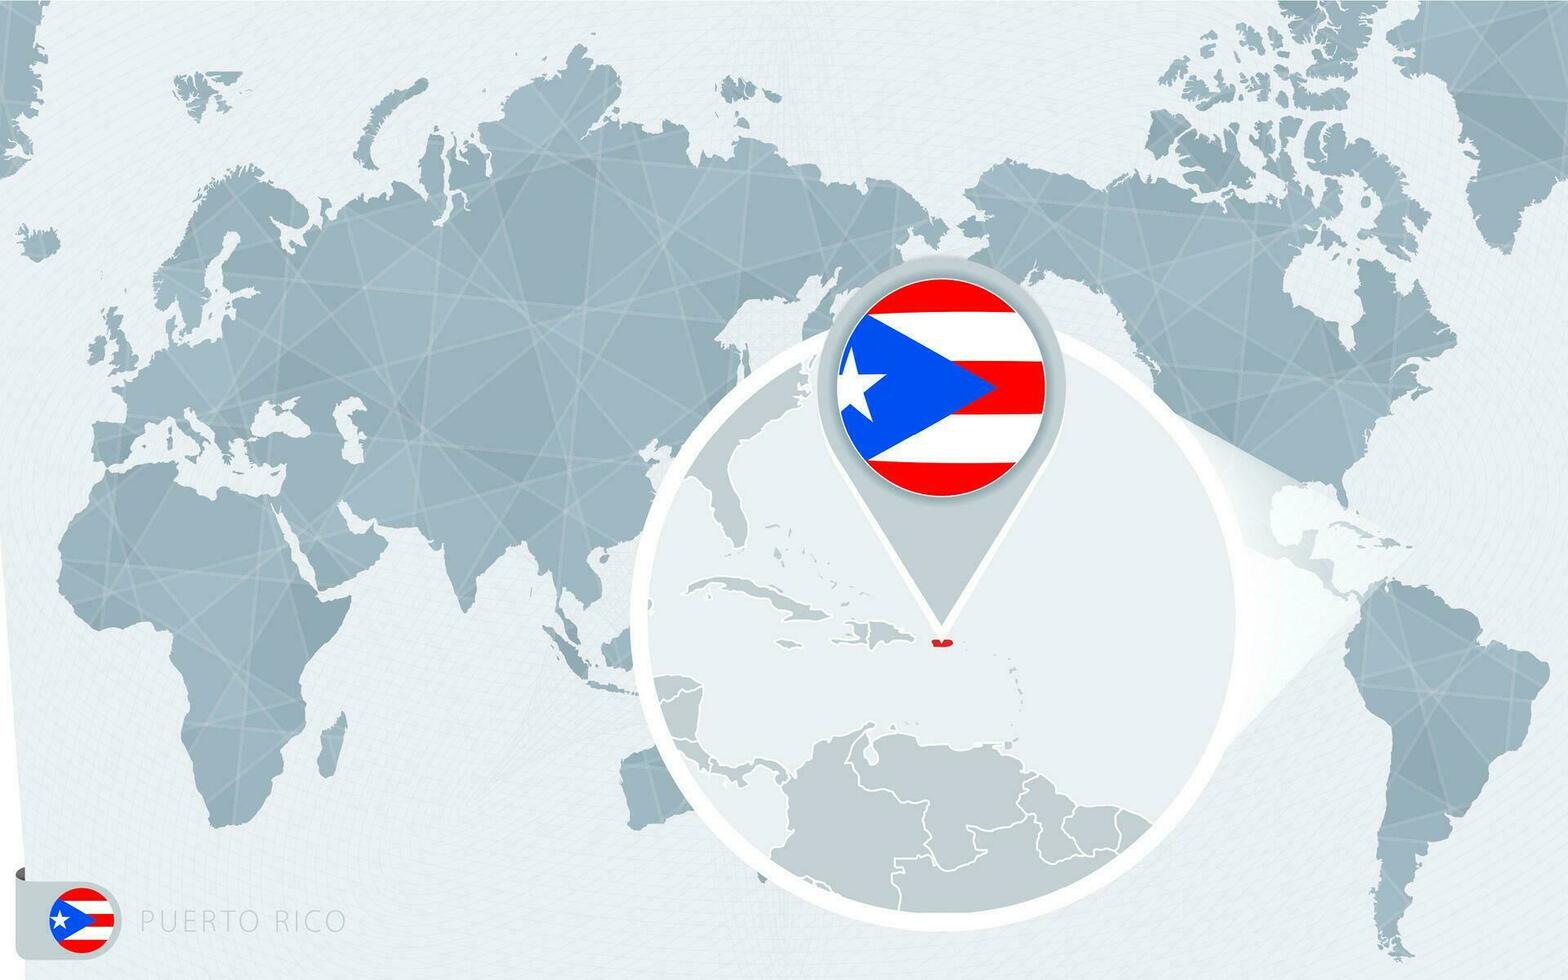 grote Oceaan gecentreerd wereld kaart met uitvergroot puerto rico. vlag en kaart van puerto rico. vector